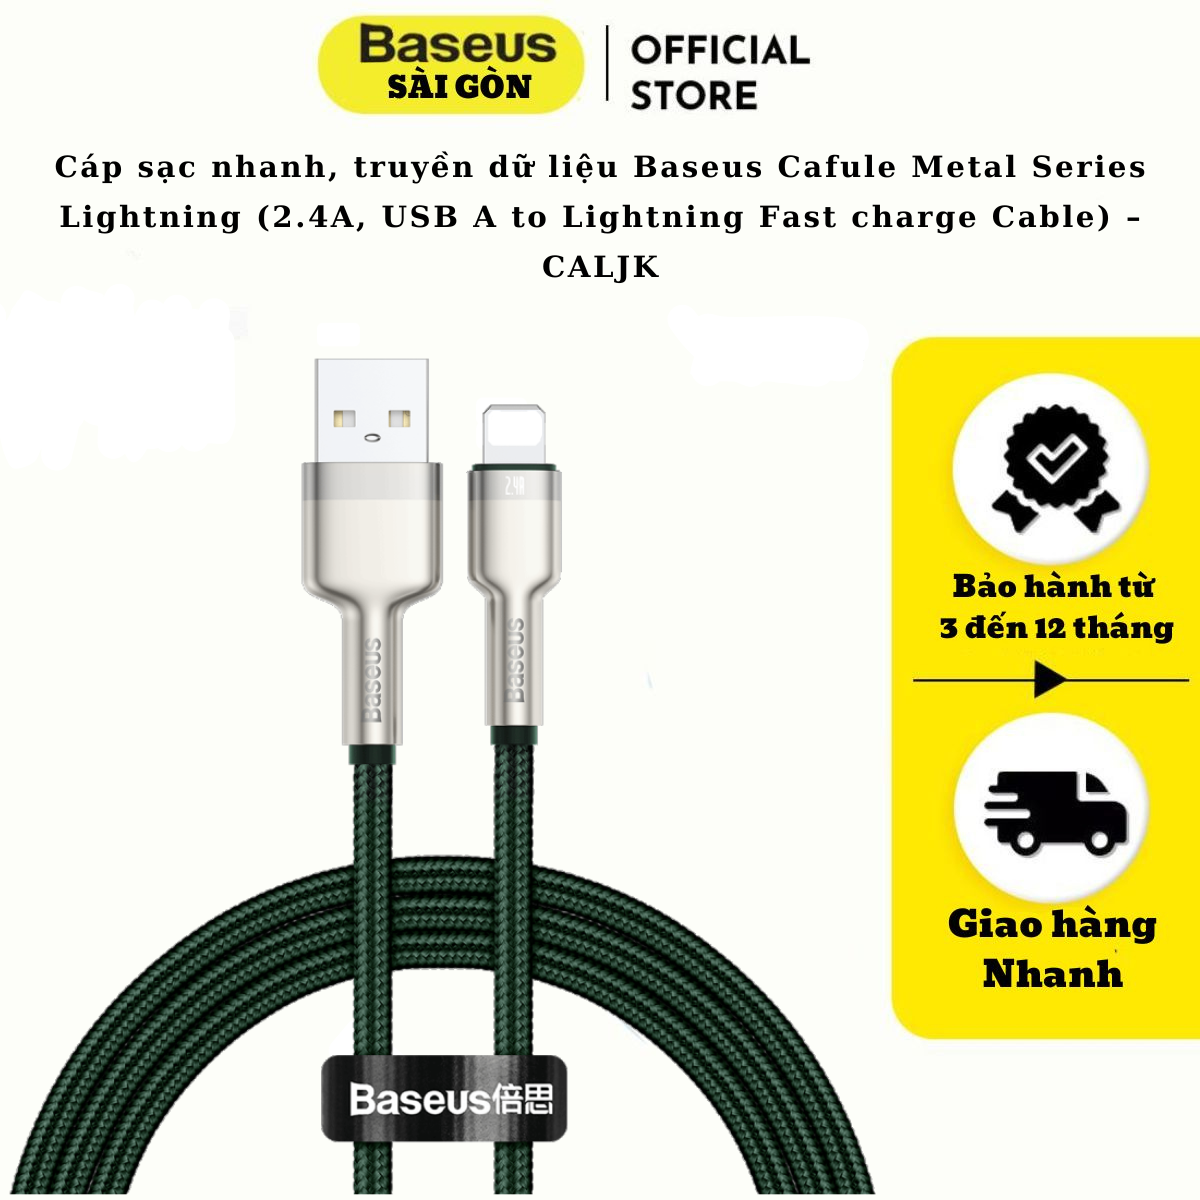 Cáp sạc nhanh, truyền dữ liệu Baseus Cafule Metal Series Light-ning dùng cho i-Phone/ iPad (2.4A, USB A to Light-ning Fast charge Cable) – CALJK- Hàng chính hãng